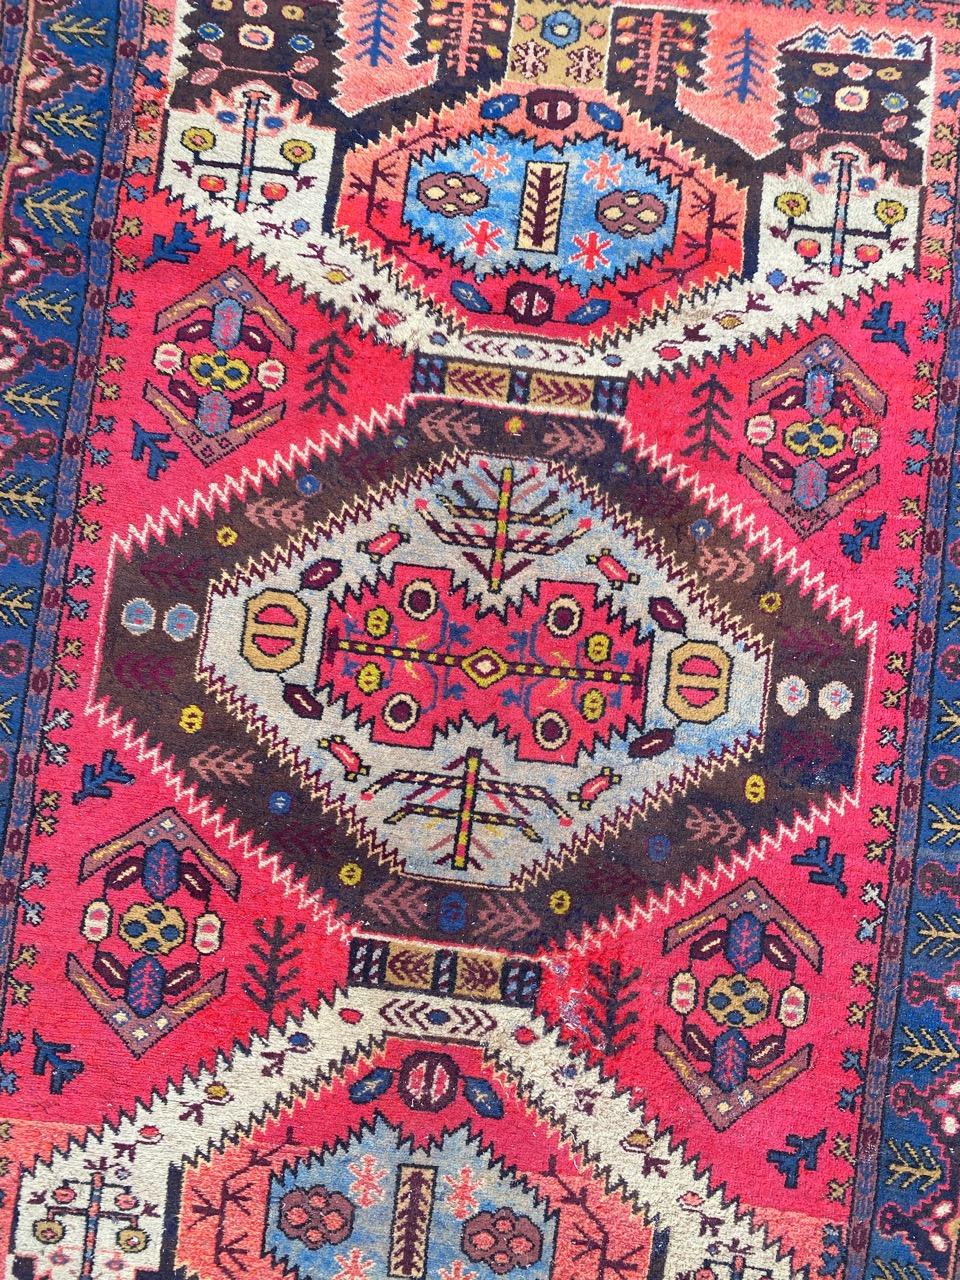 Magnifique tapis azerbaïdjanais du milieu du siècle avec un design caucasien et de belles couleurs, entièrement noué à la main avec du velours de laine sur une base de coton.

✨✨✨
